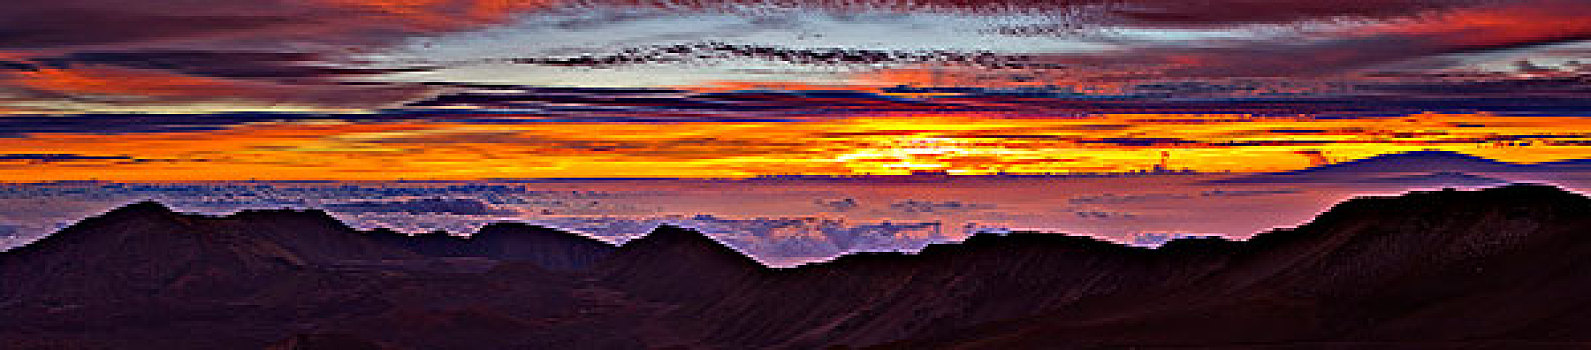 云,上方,山峦,日出,哈雷阿卡拉火山,毛伊岛,夏威夷,美国